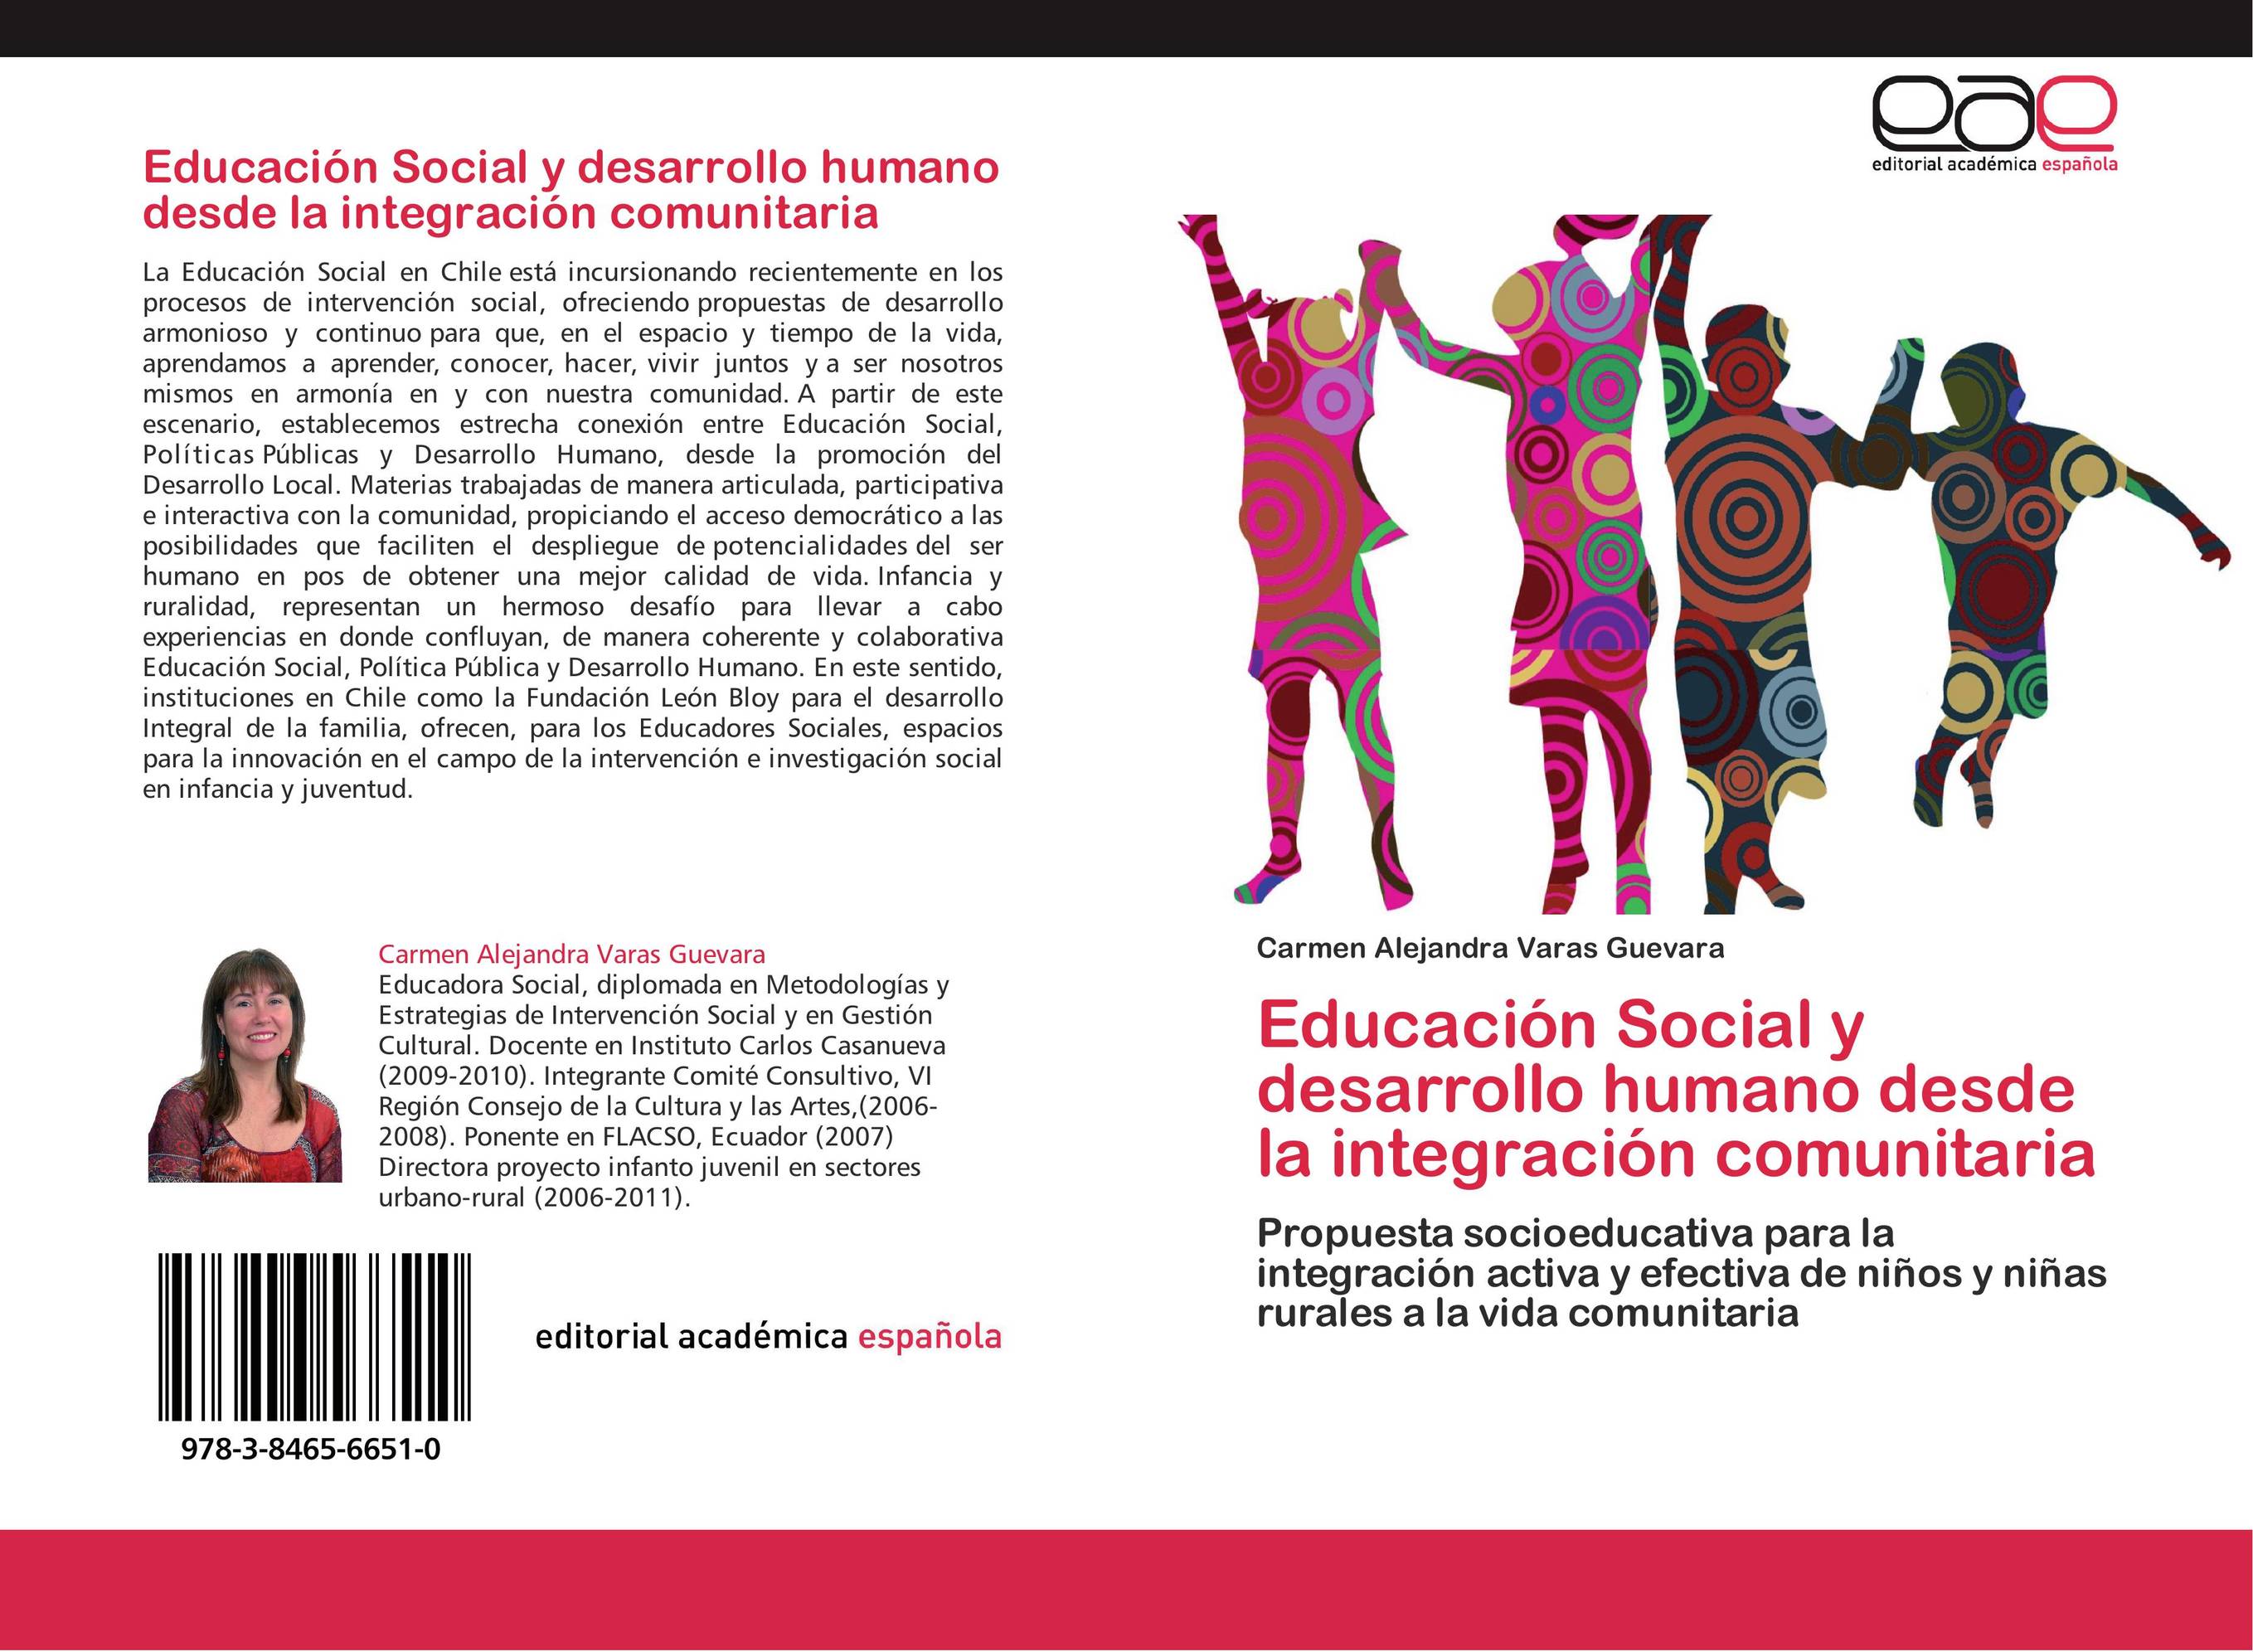 Educación Social y desarrollo humano desde la integración comunitaria